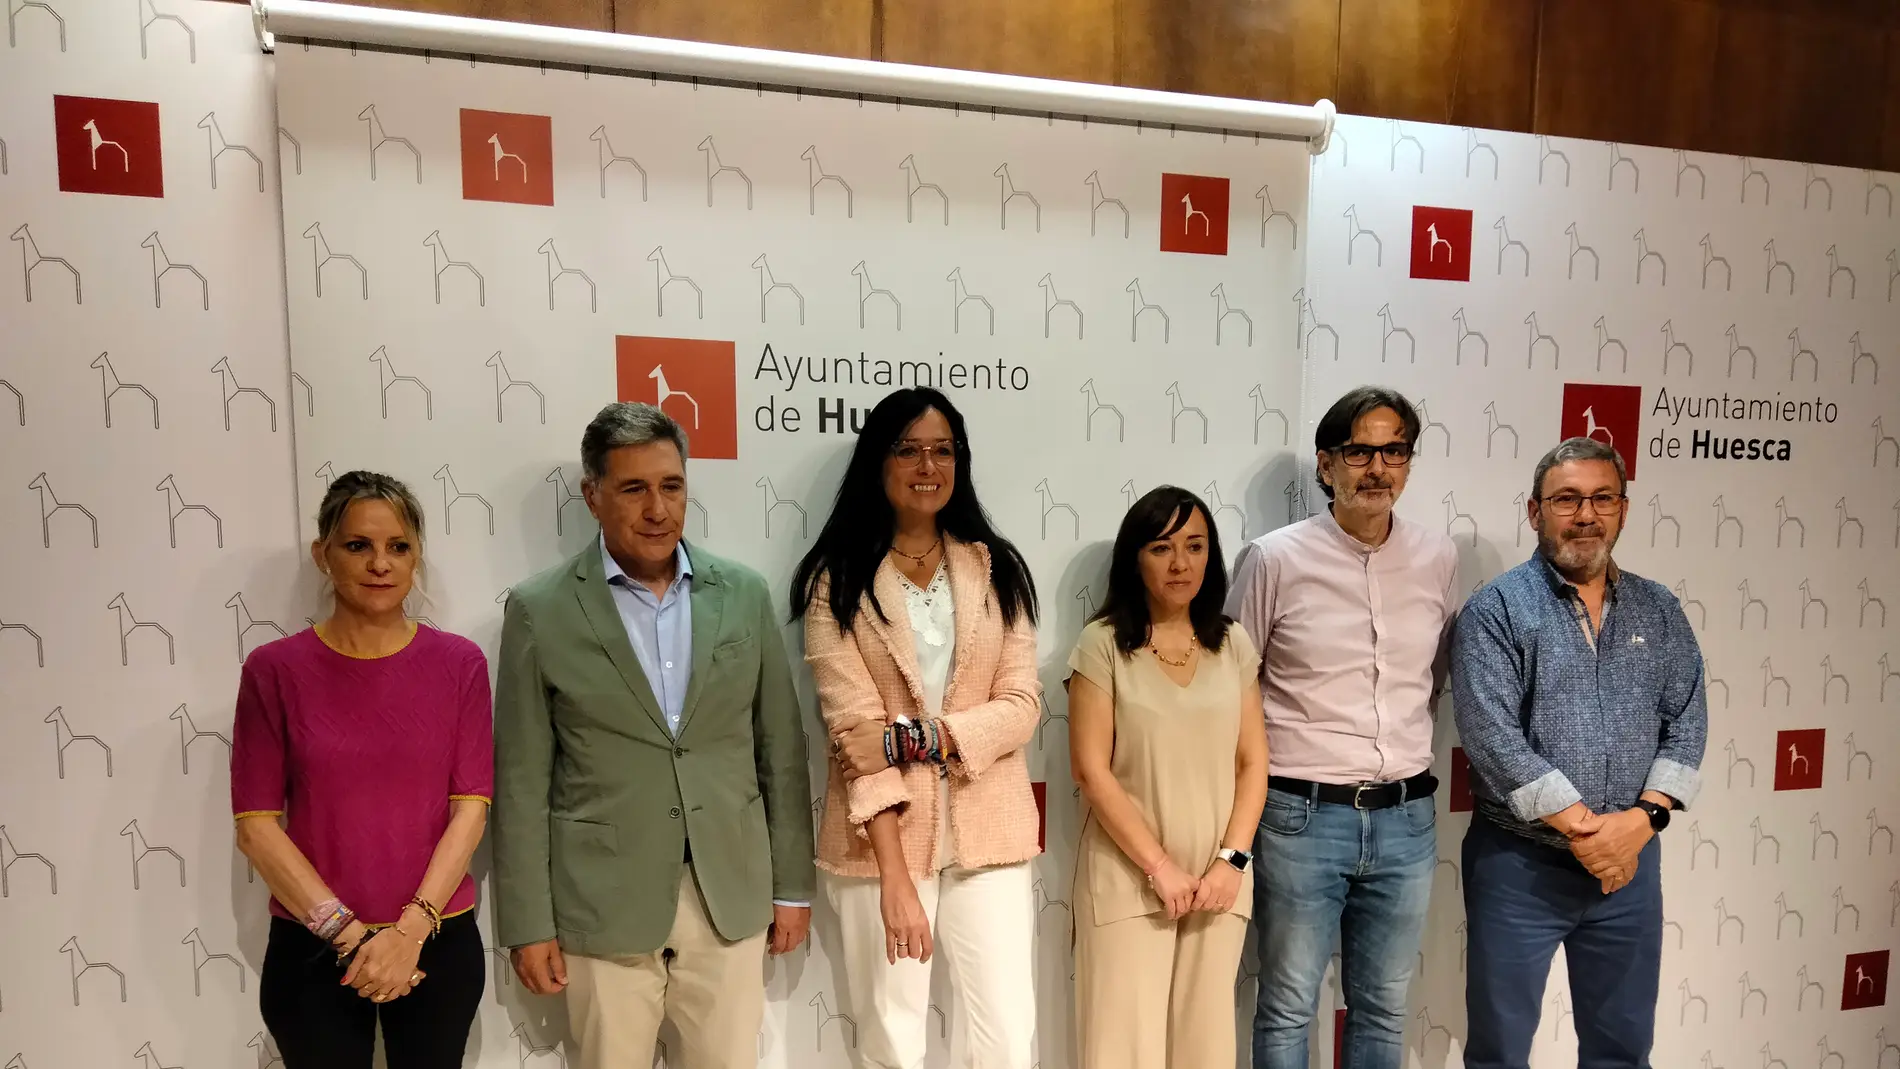 Nuria Mur, Ricardo Oliván, Lorena Orduna, Gemma Allué, Iván Rodríguez y José Miguel Veintemilla.